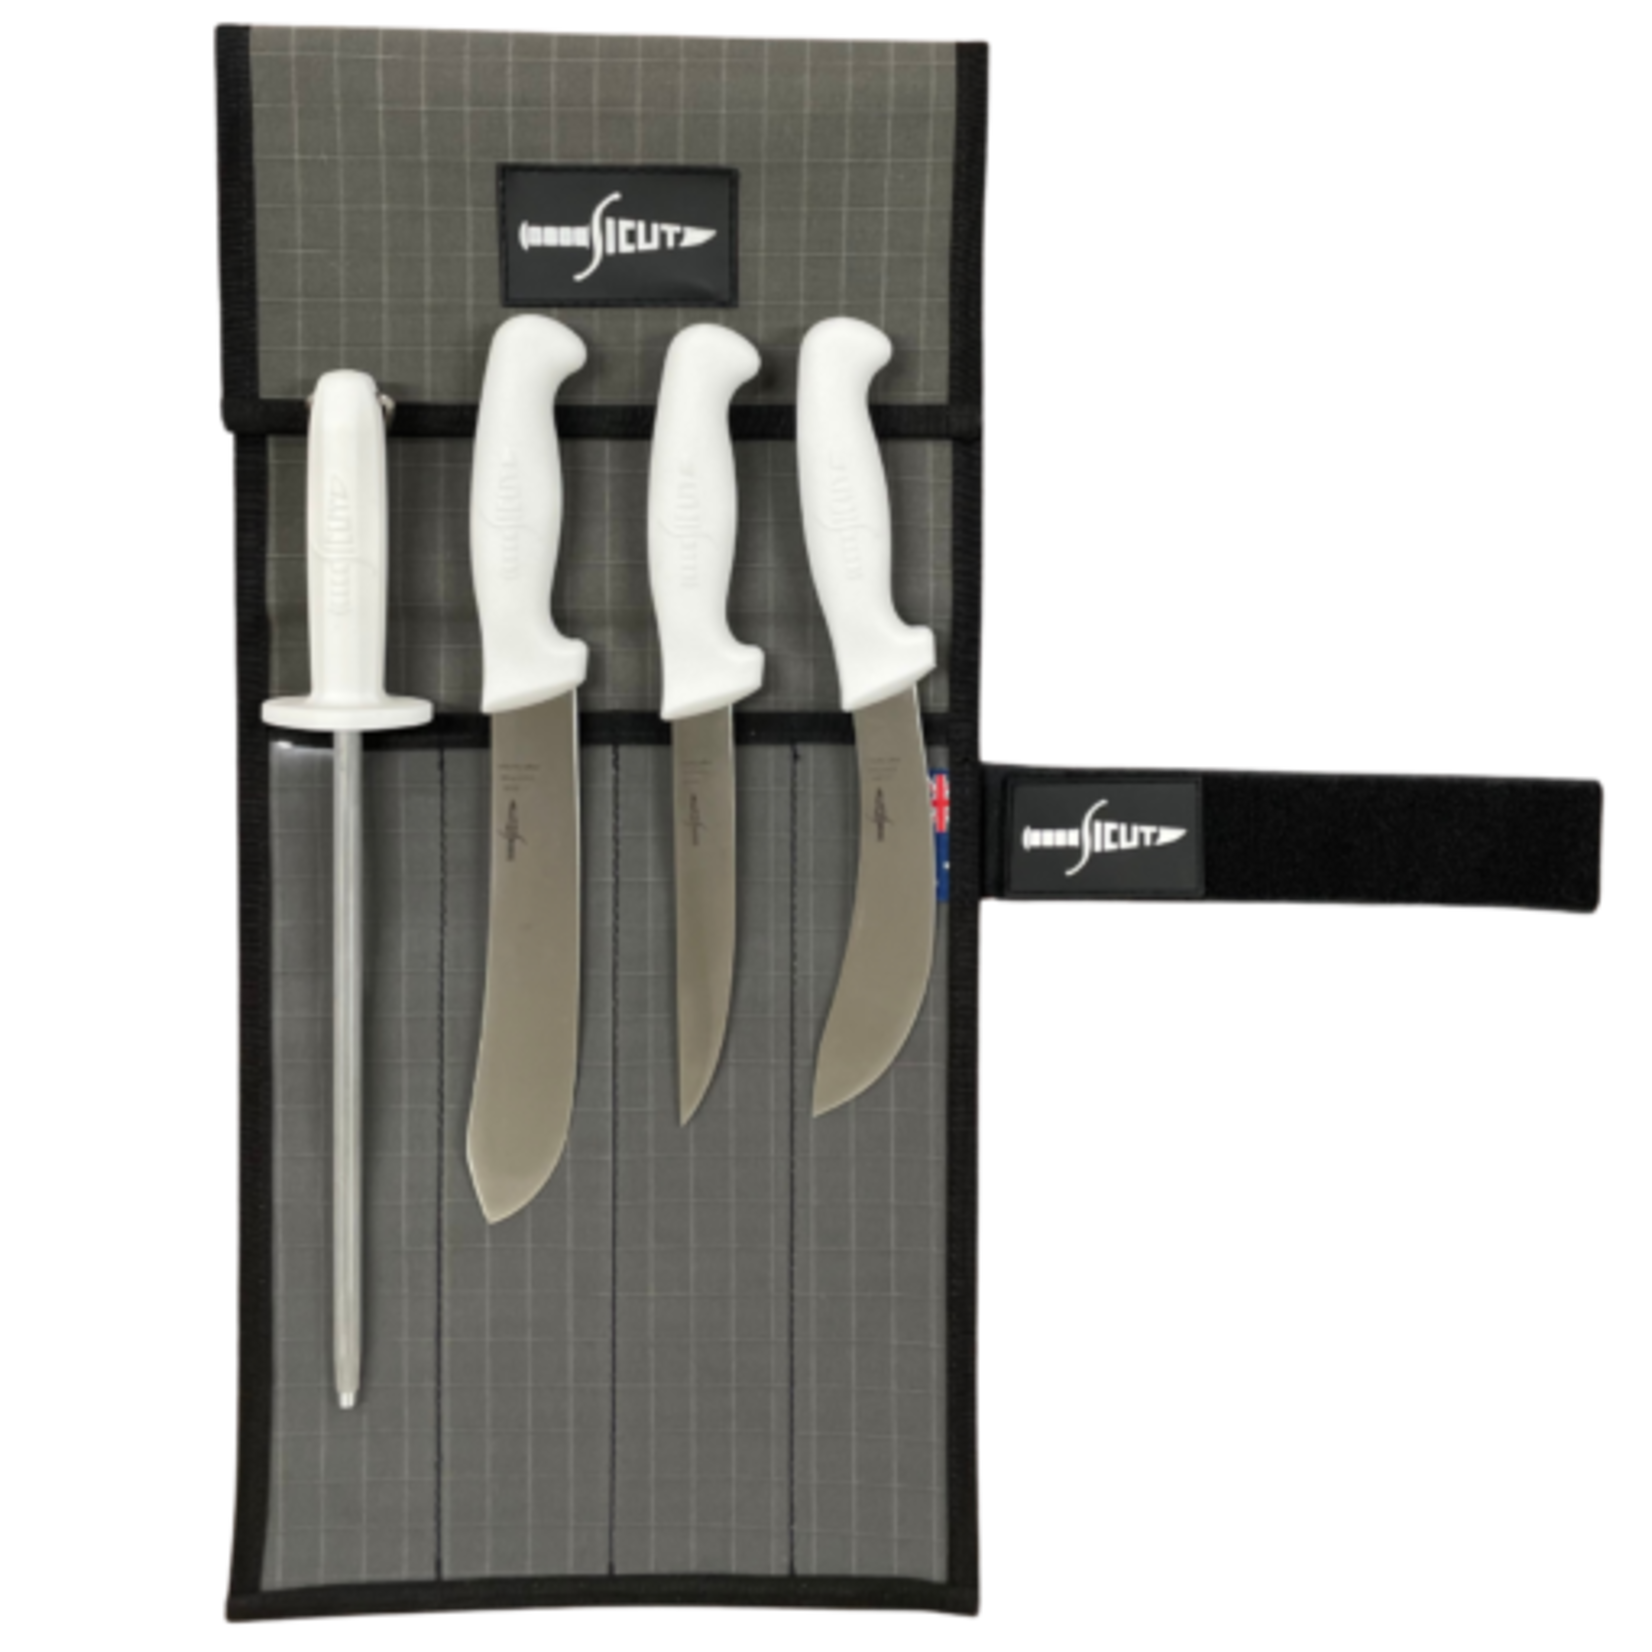 Sicut Sicut 3 Knife + Steel Butchering Package - Glow handles in Canvas Roll